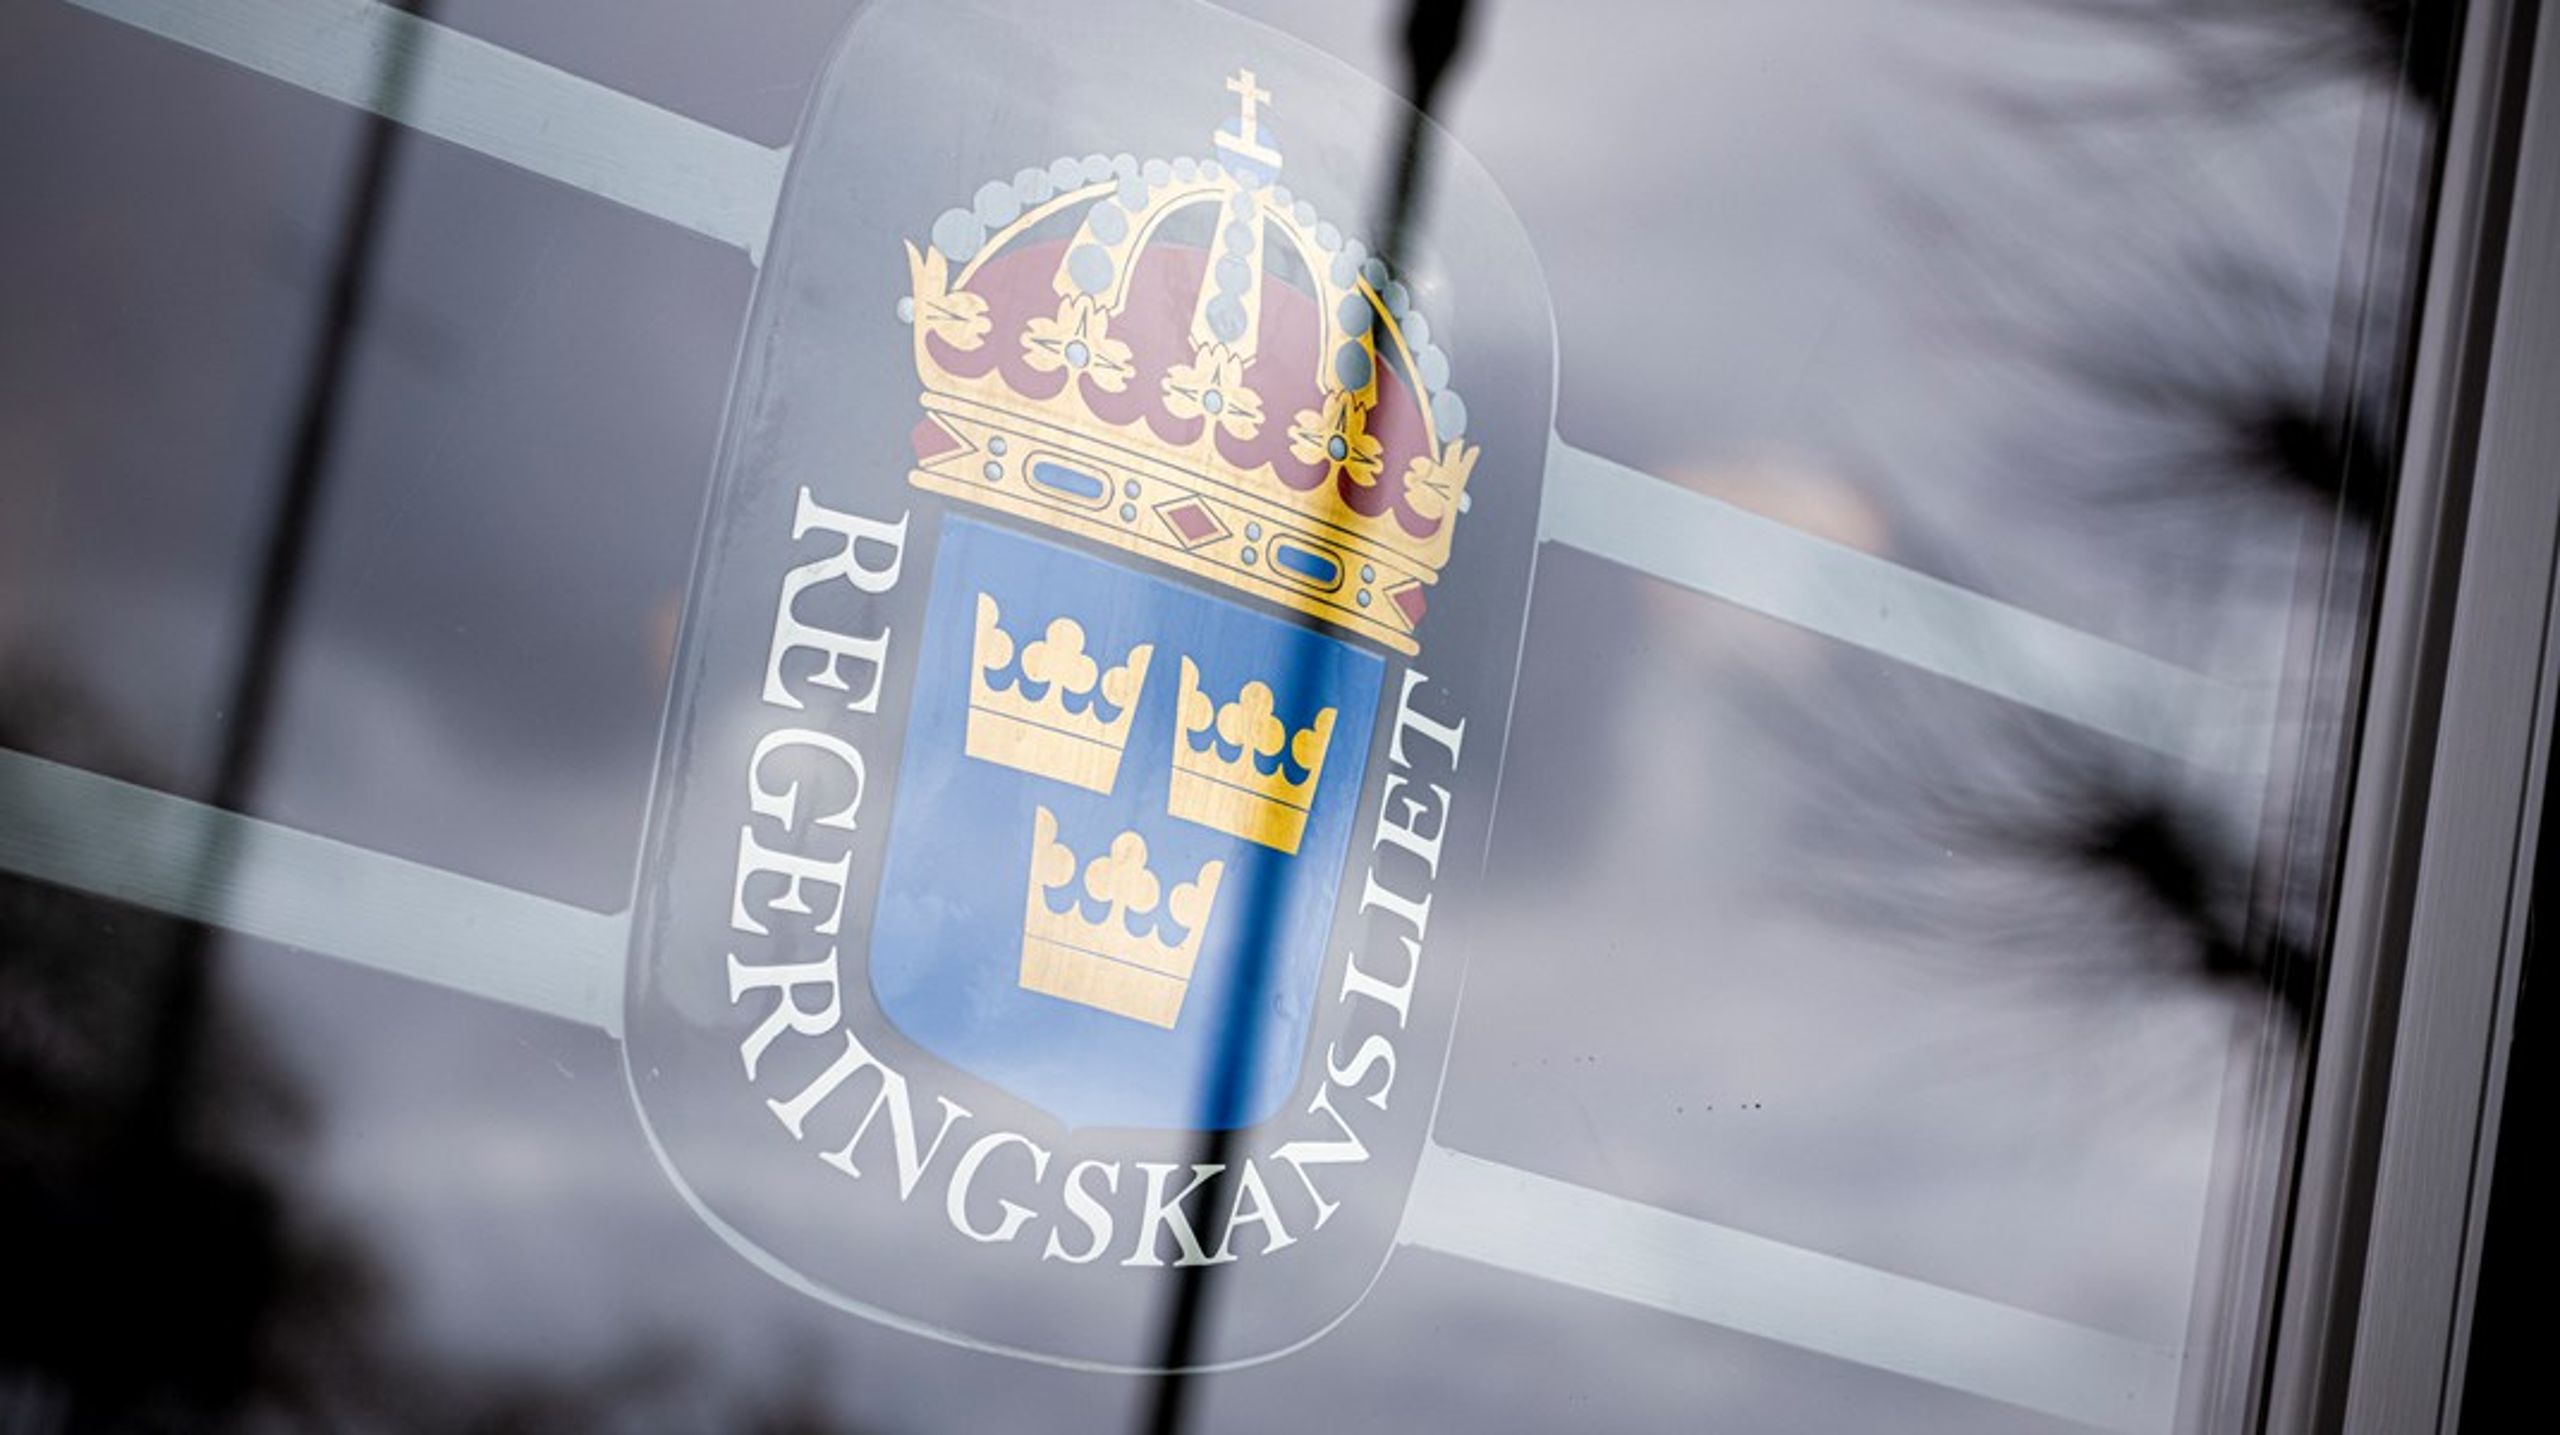 Business Swedens verksamhetsform&nbsp;är helt oreglerad, konstaterar Riksrevisionen som nu vill att regeringen ser över hur organisationen ska styras.